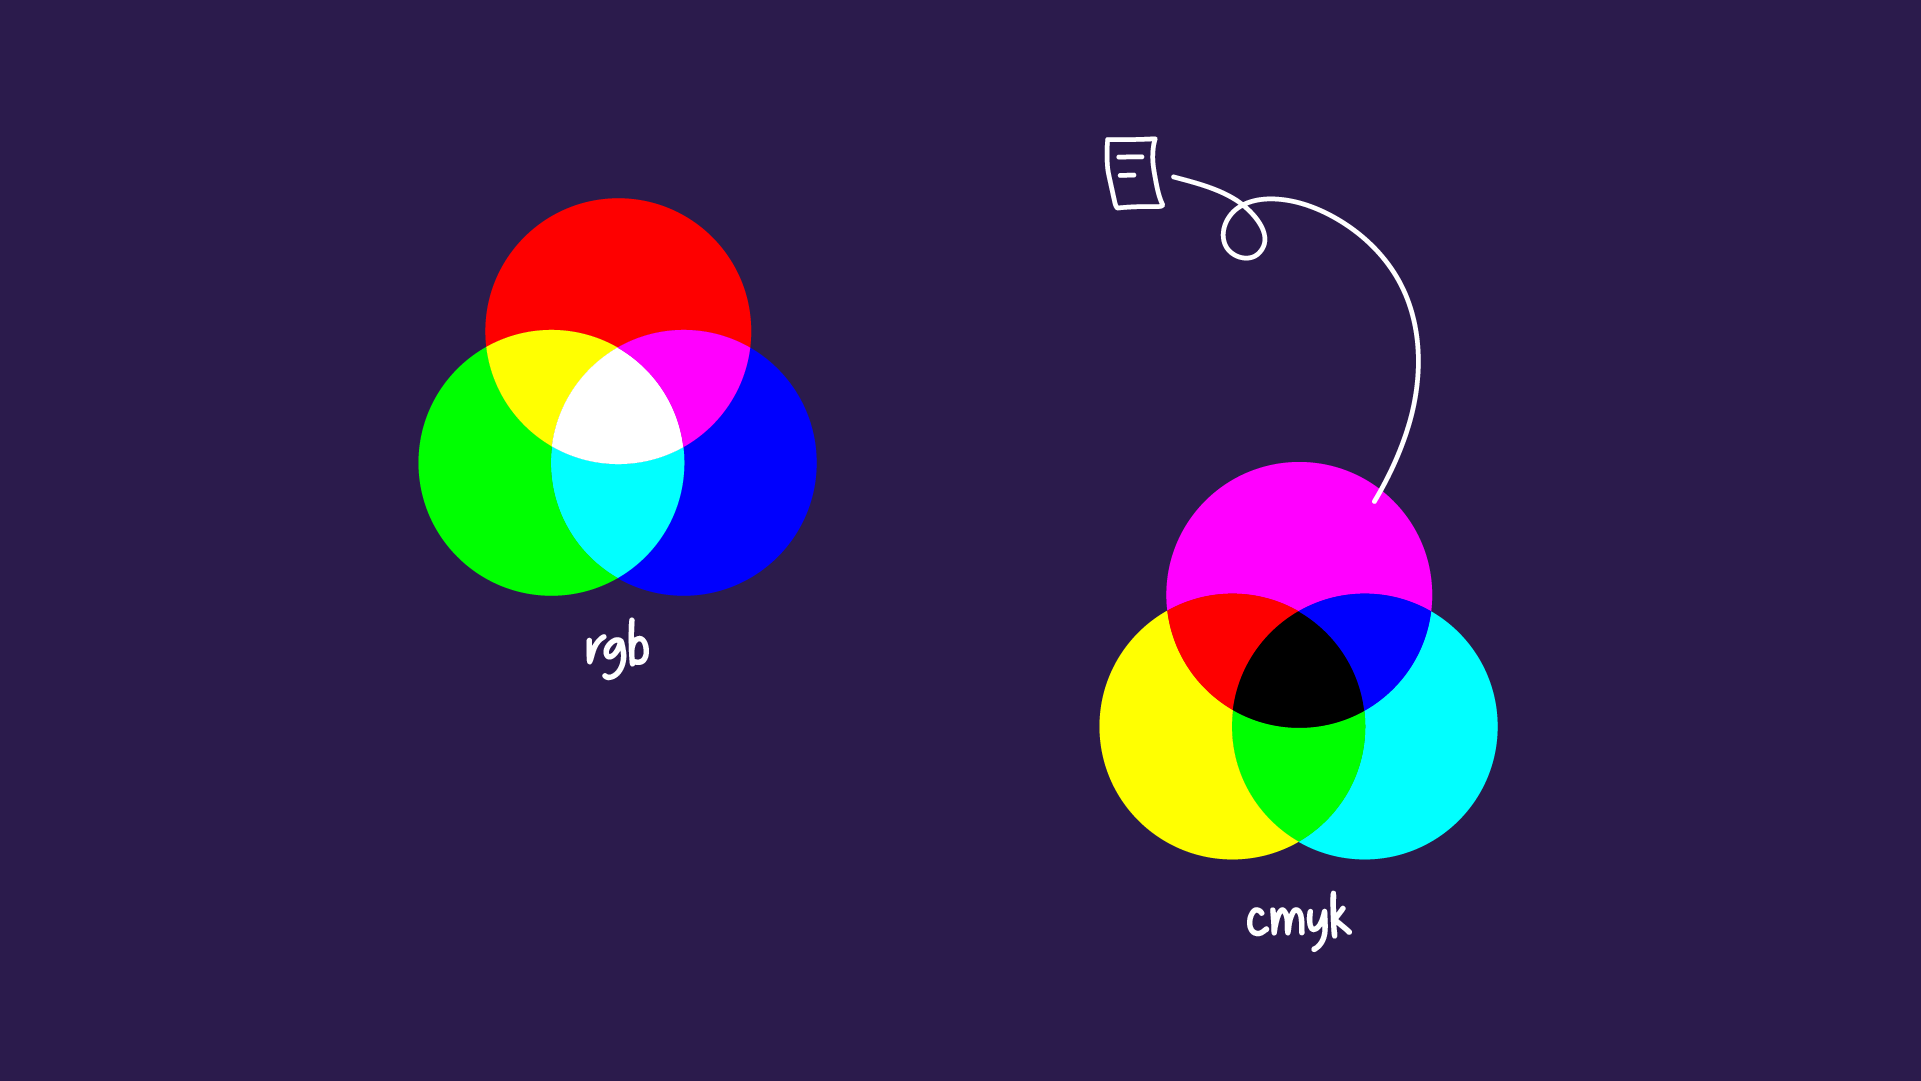 كيفية اختيار أفضل مجموعات وتركيبات الألوان للعروض التقديمية